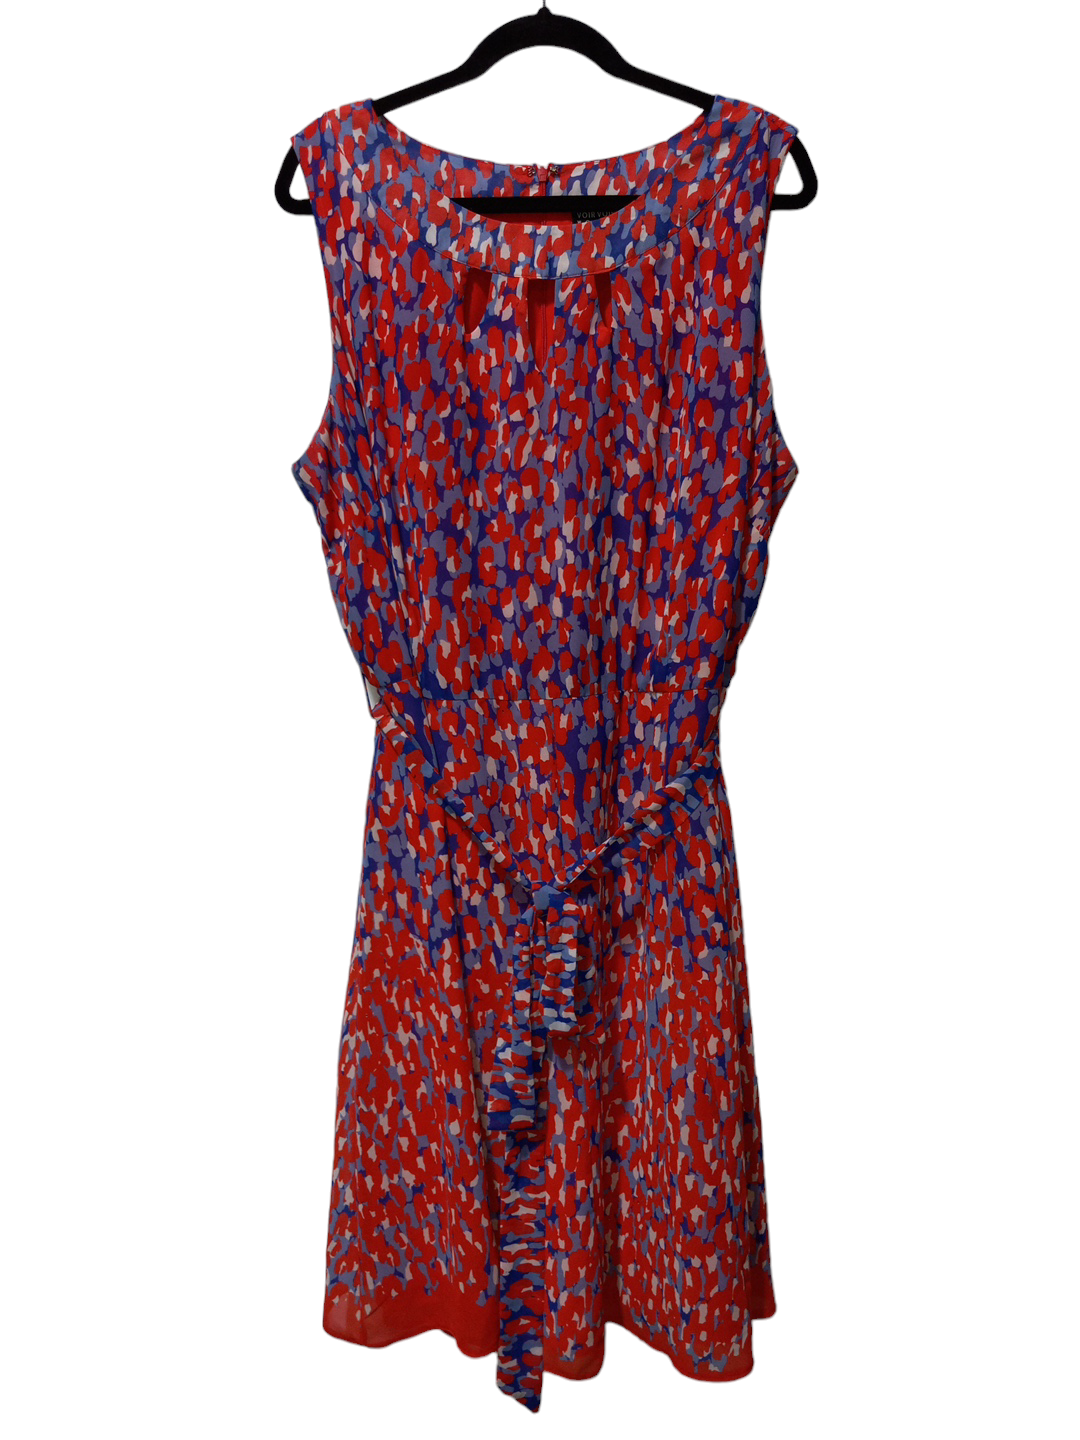 Multi-colored Dress Casual Short Voir Voir, Size 2x